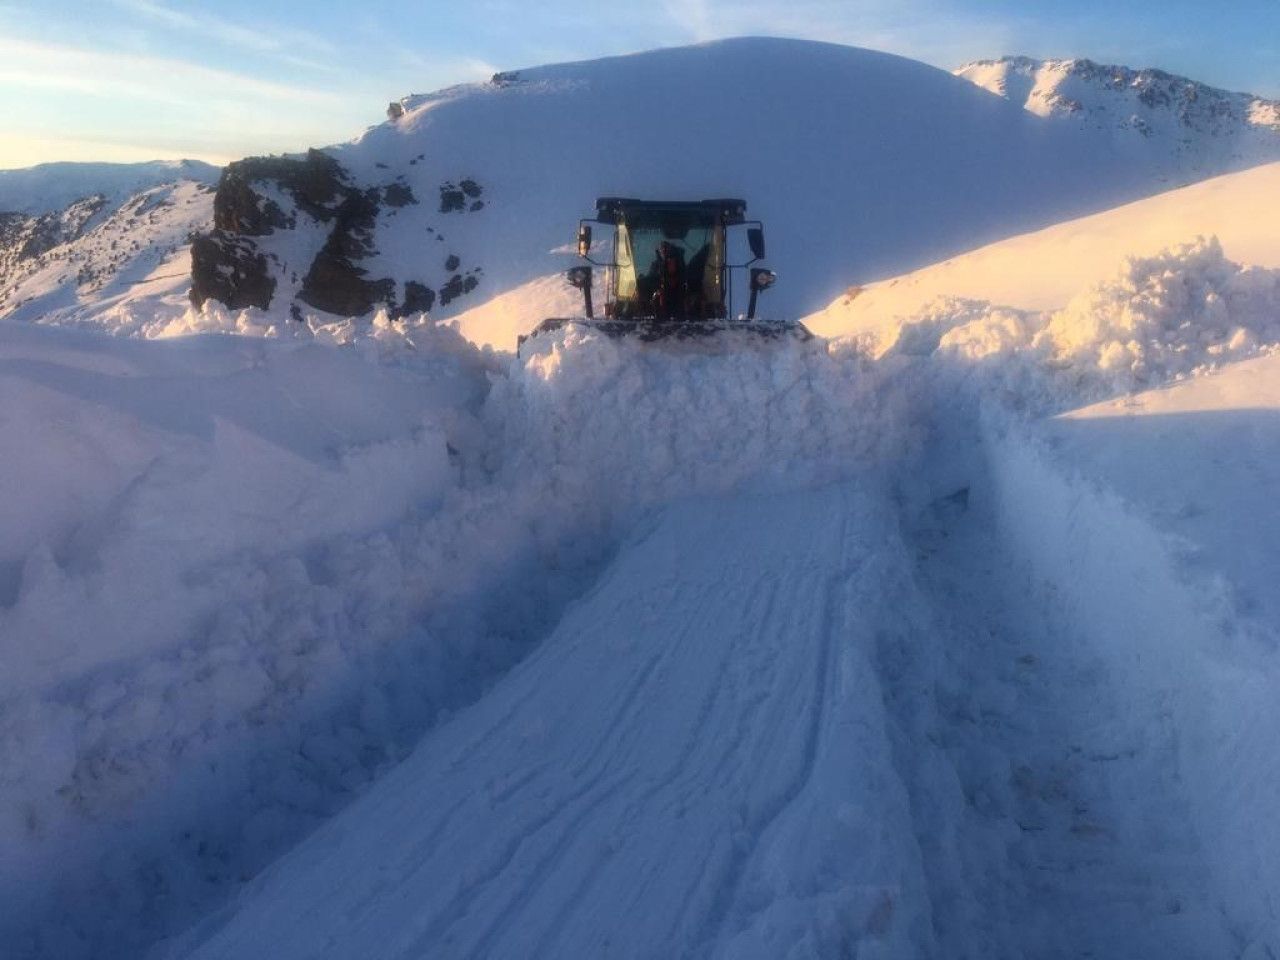 Kar Yağışı: 3 Metre Kar ve Köy Yollarında Mücadele